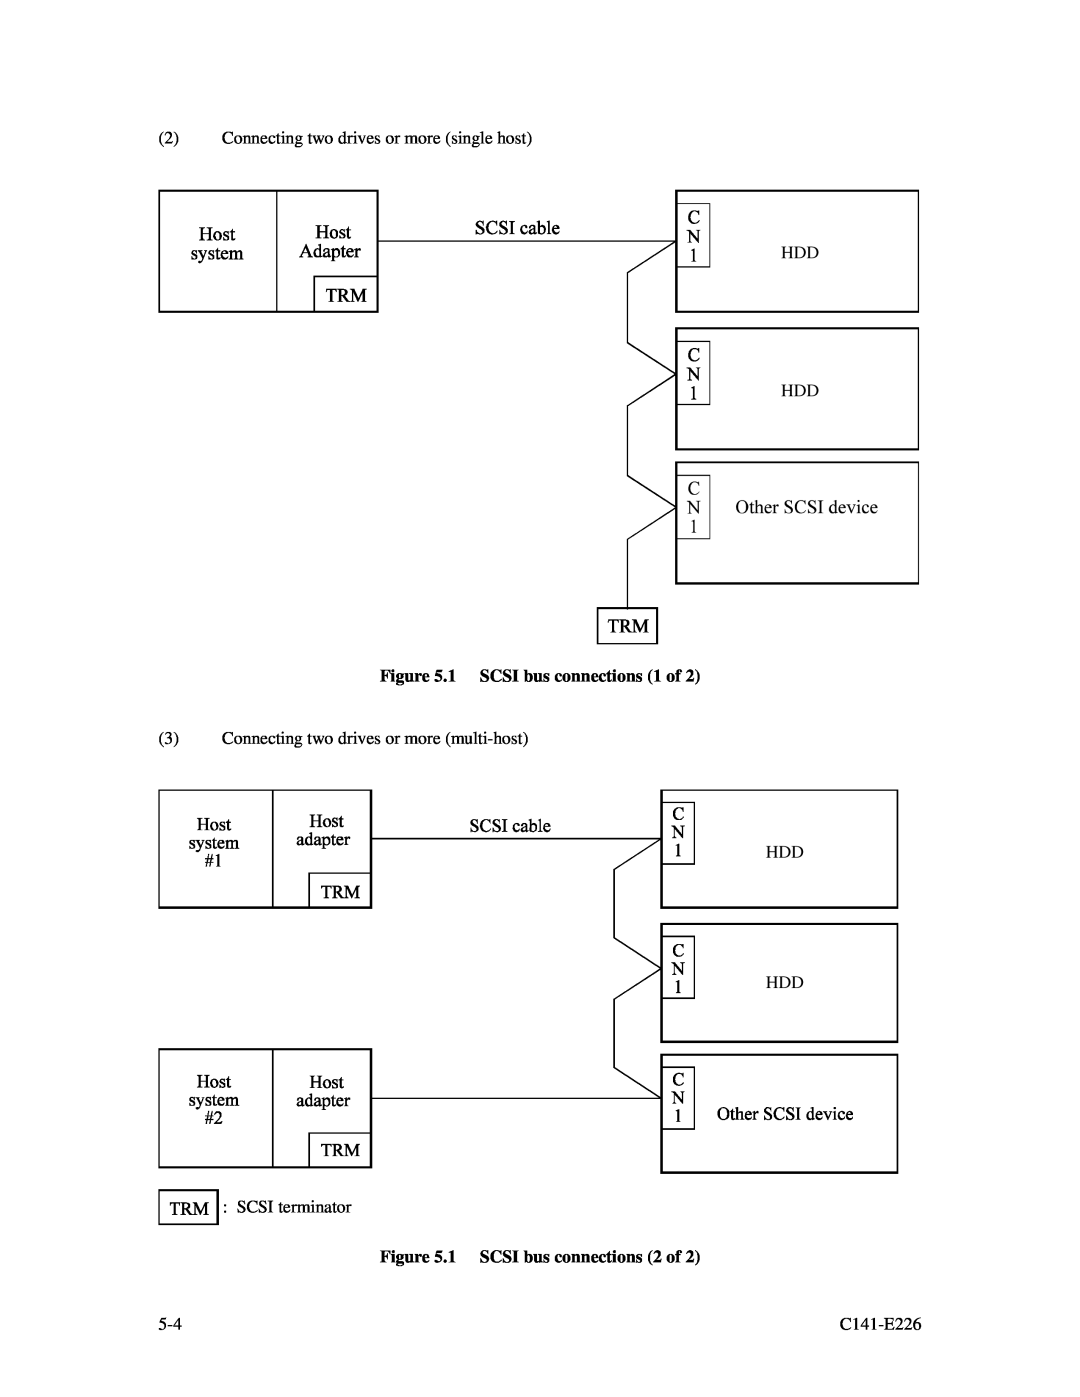 Fujitsu MAW3073NC/NP, MAW3300NC/NP, MAW3147NC/NP manual 1 SCSI bus connections 1 of, 1 SCSI bus connections 2 of, C141-E226 